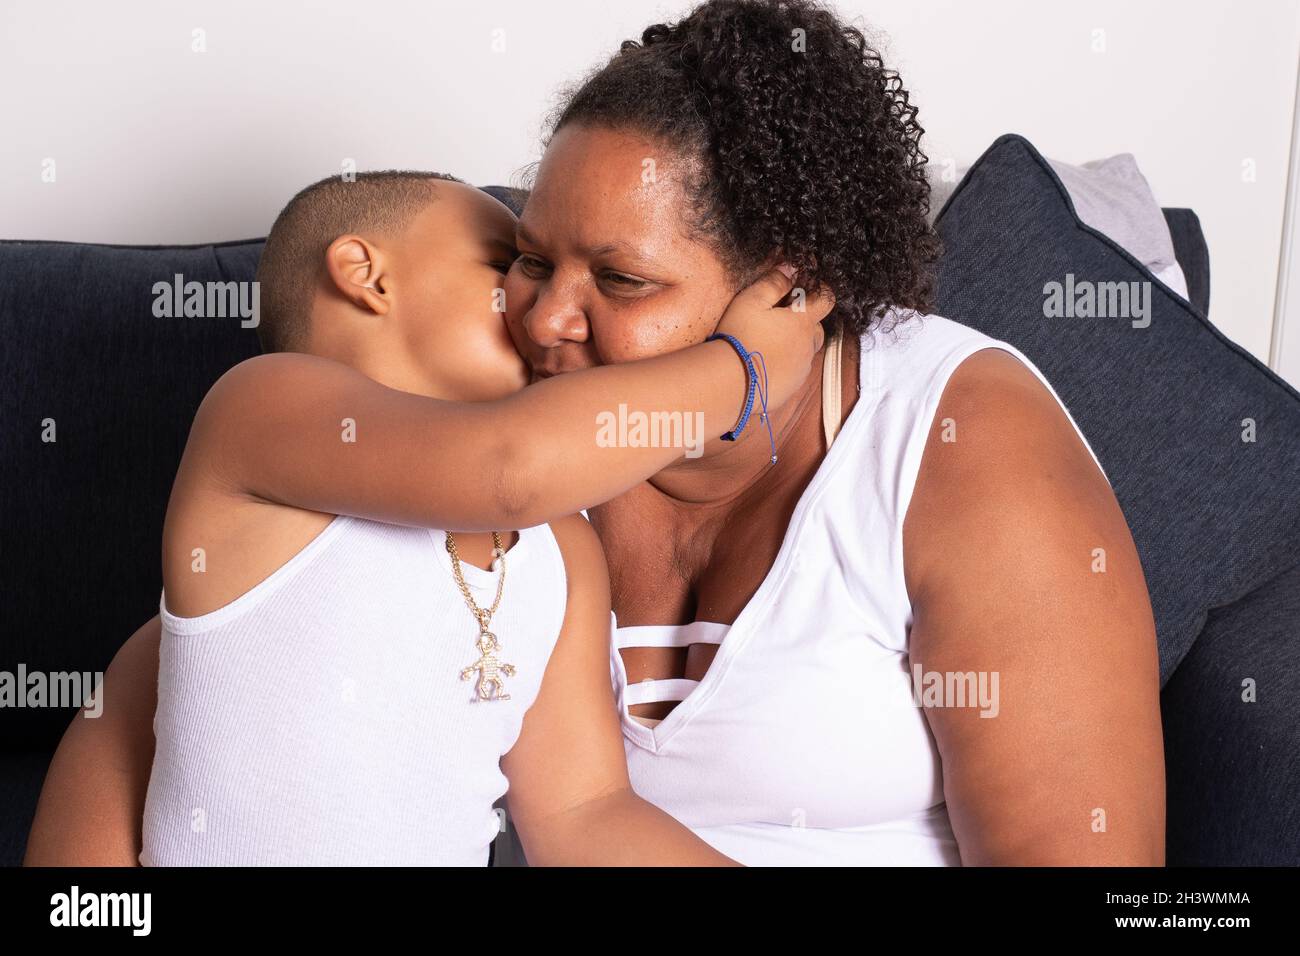 garçon de 5 ans donnant à sa grand-mère un kss, assis sur un canapé Banque D'Images